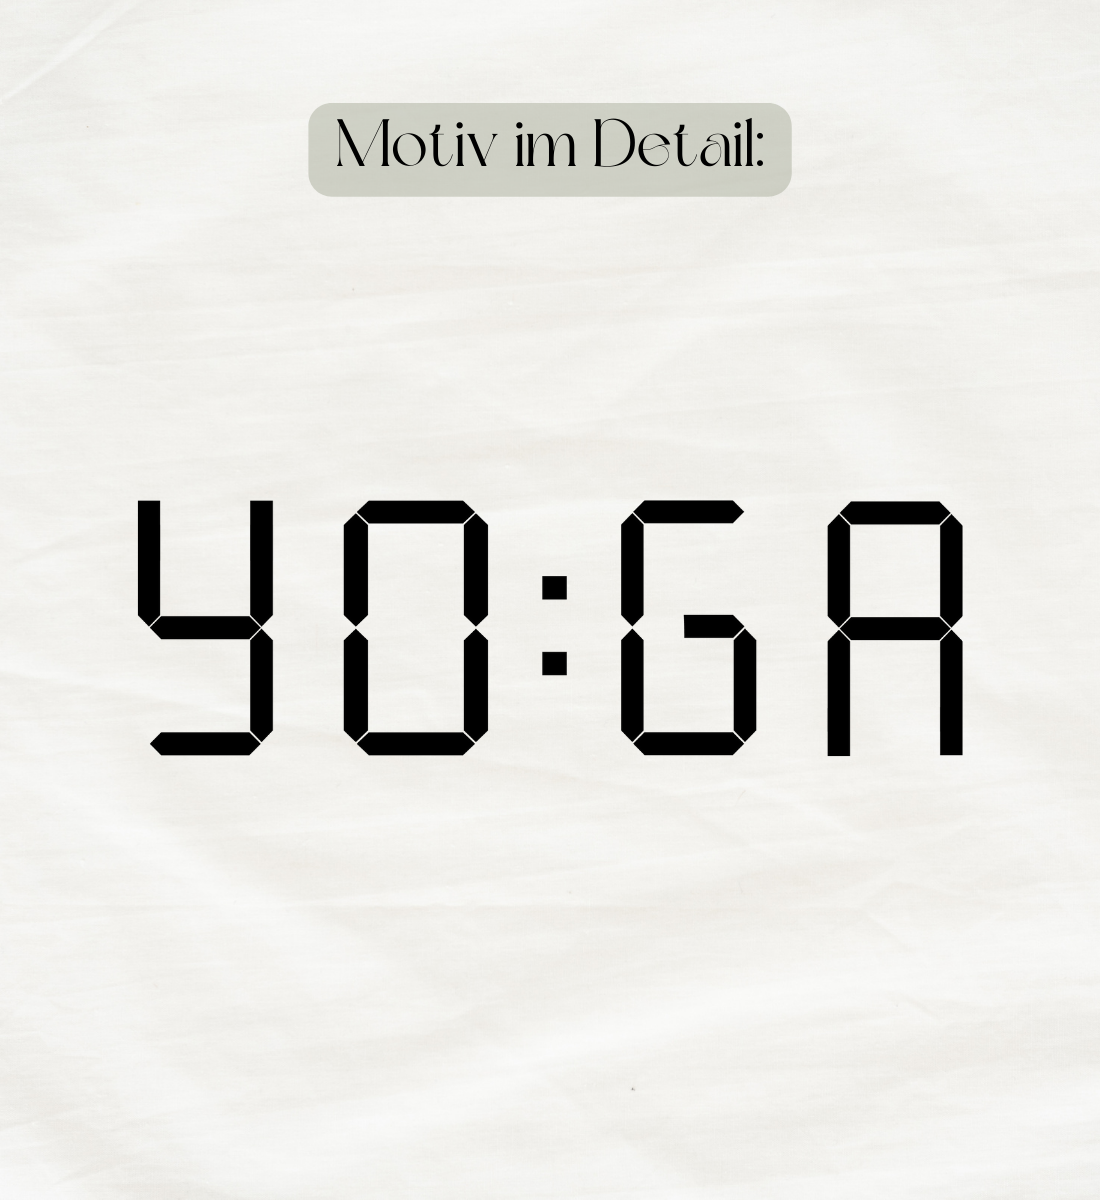 motiv l zeit für yoga l yoga shirt kinder l yoga kleidung kinder l nachhaltige mode für kinder l vegane kinder mode